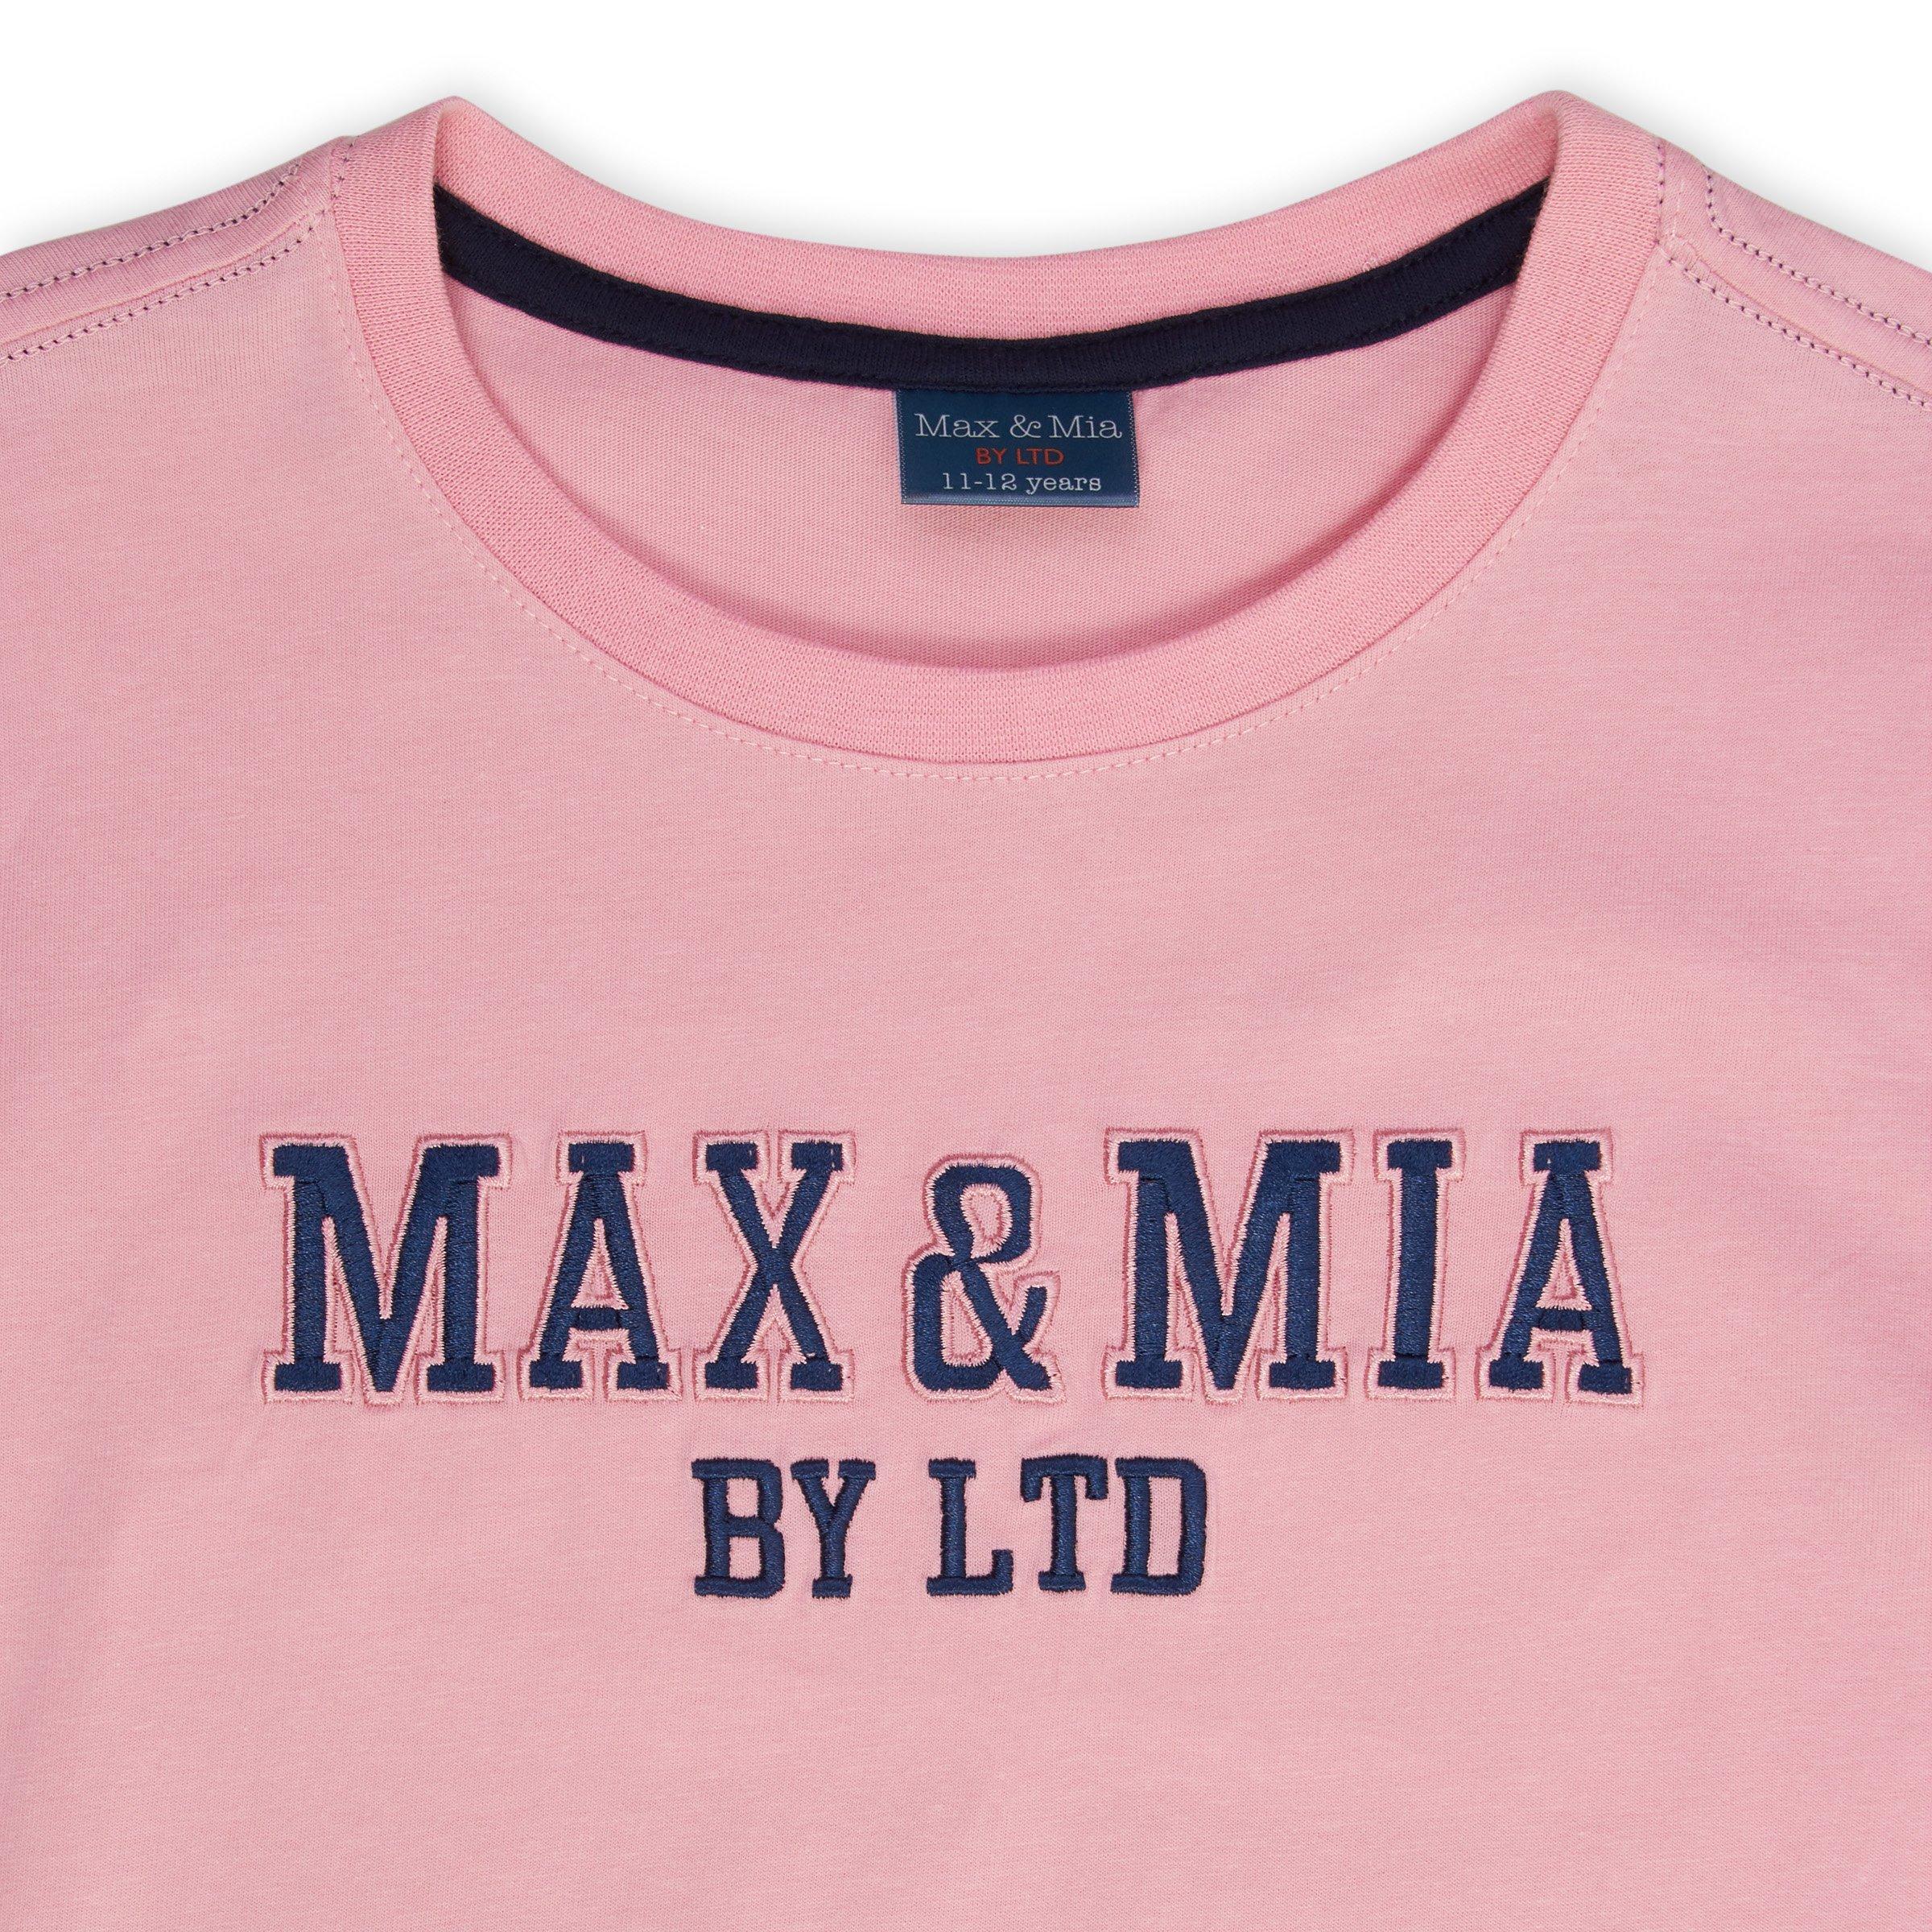 Shop Max & Mia by LTD online now > - Truworths Fashion